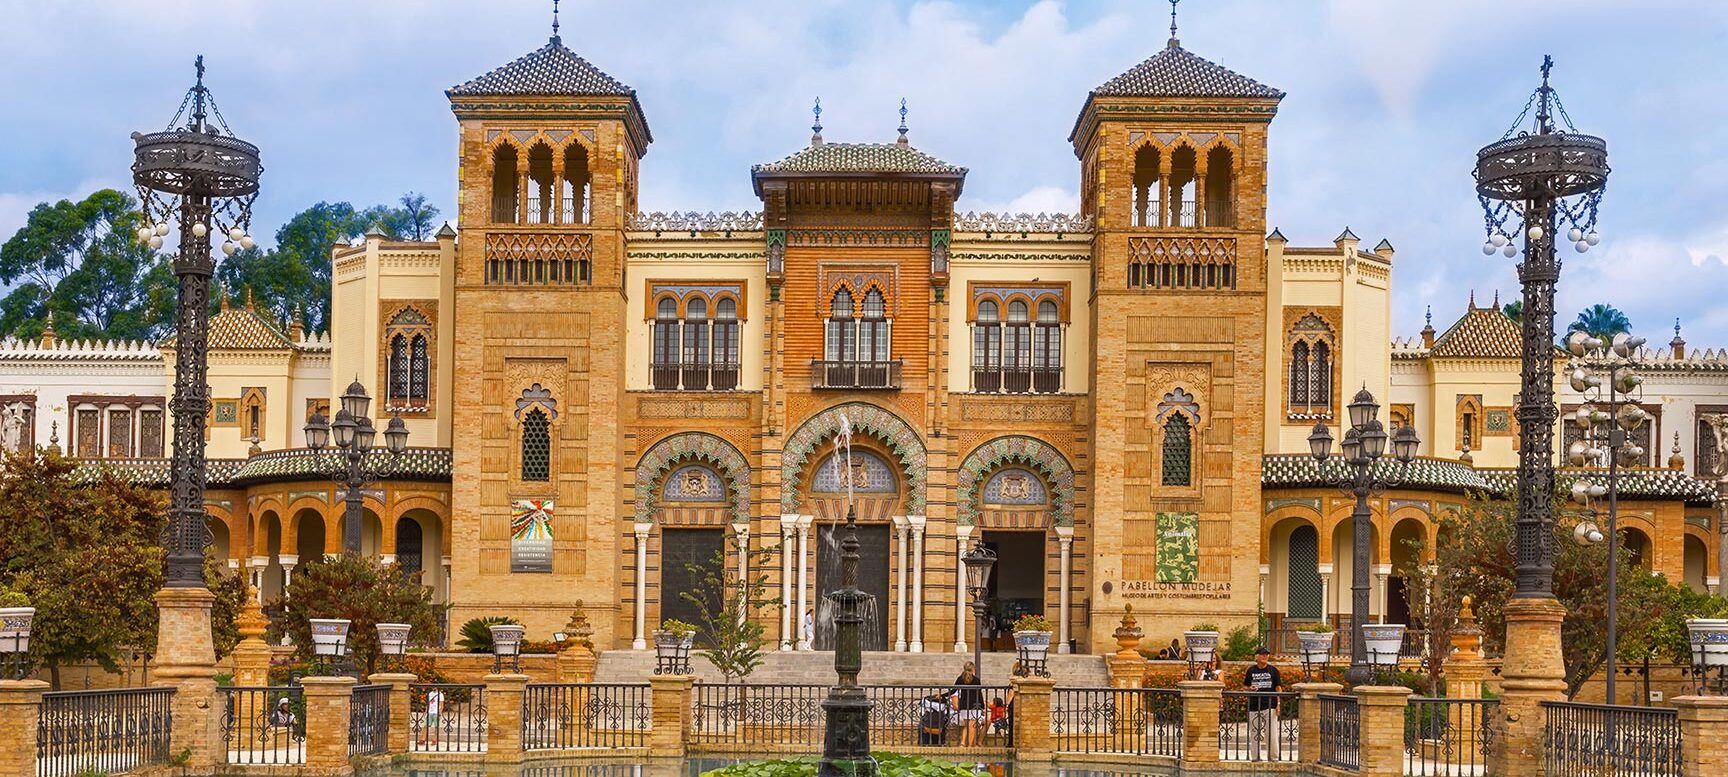 MUSEO DE ARTES Y COSTUMBRES POPULARES DE SEVILLA		Sevilla	Sevilla